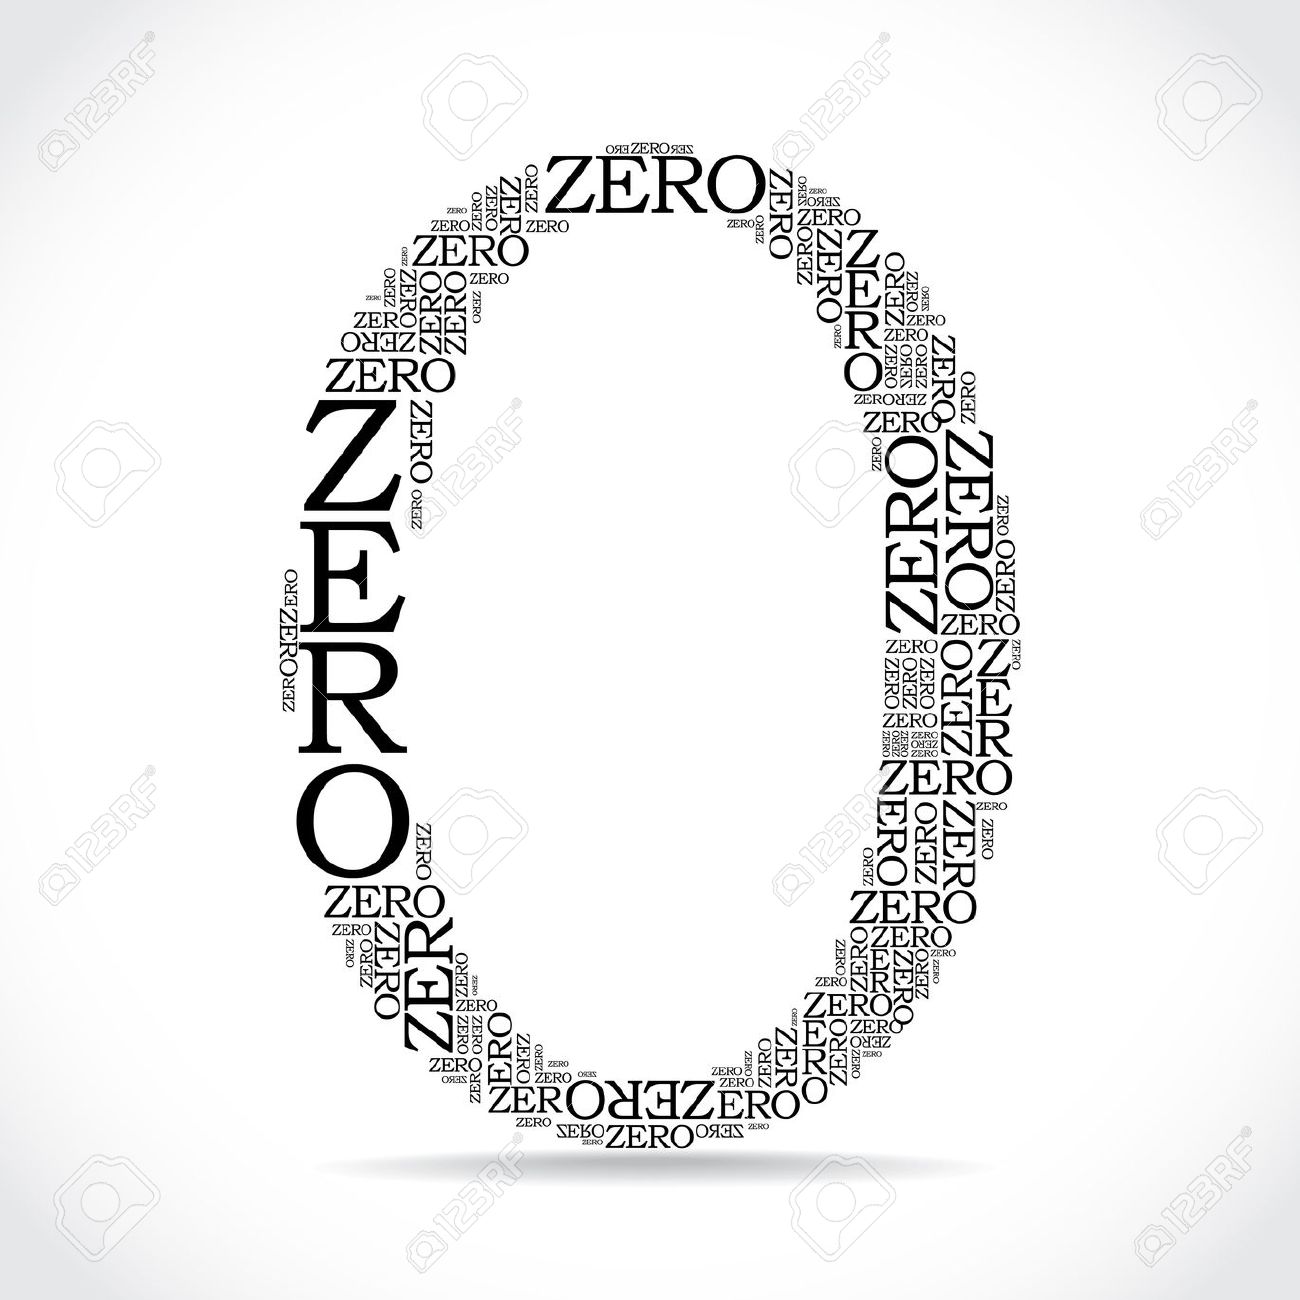 Re-conceptualizing Zero; or: Zero-stroke